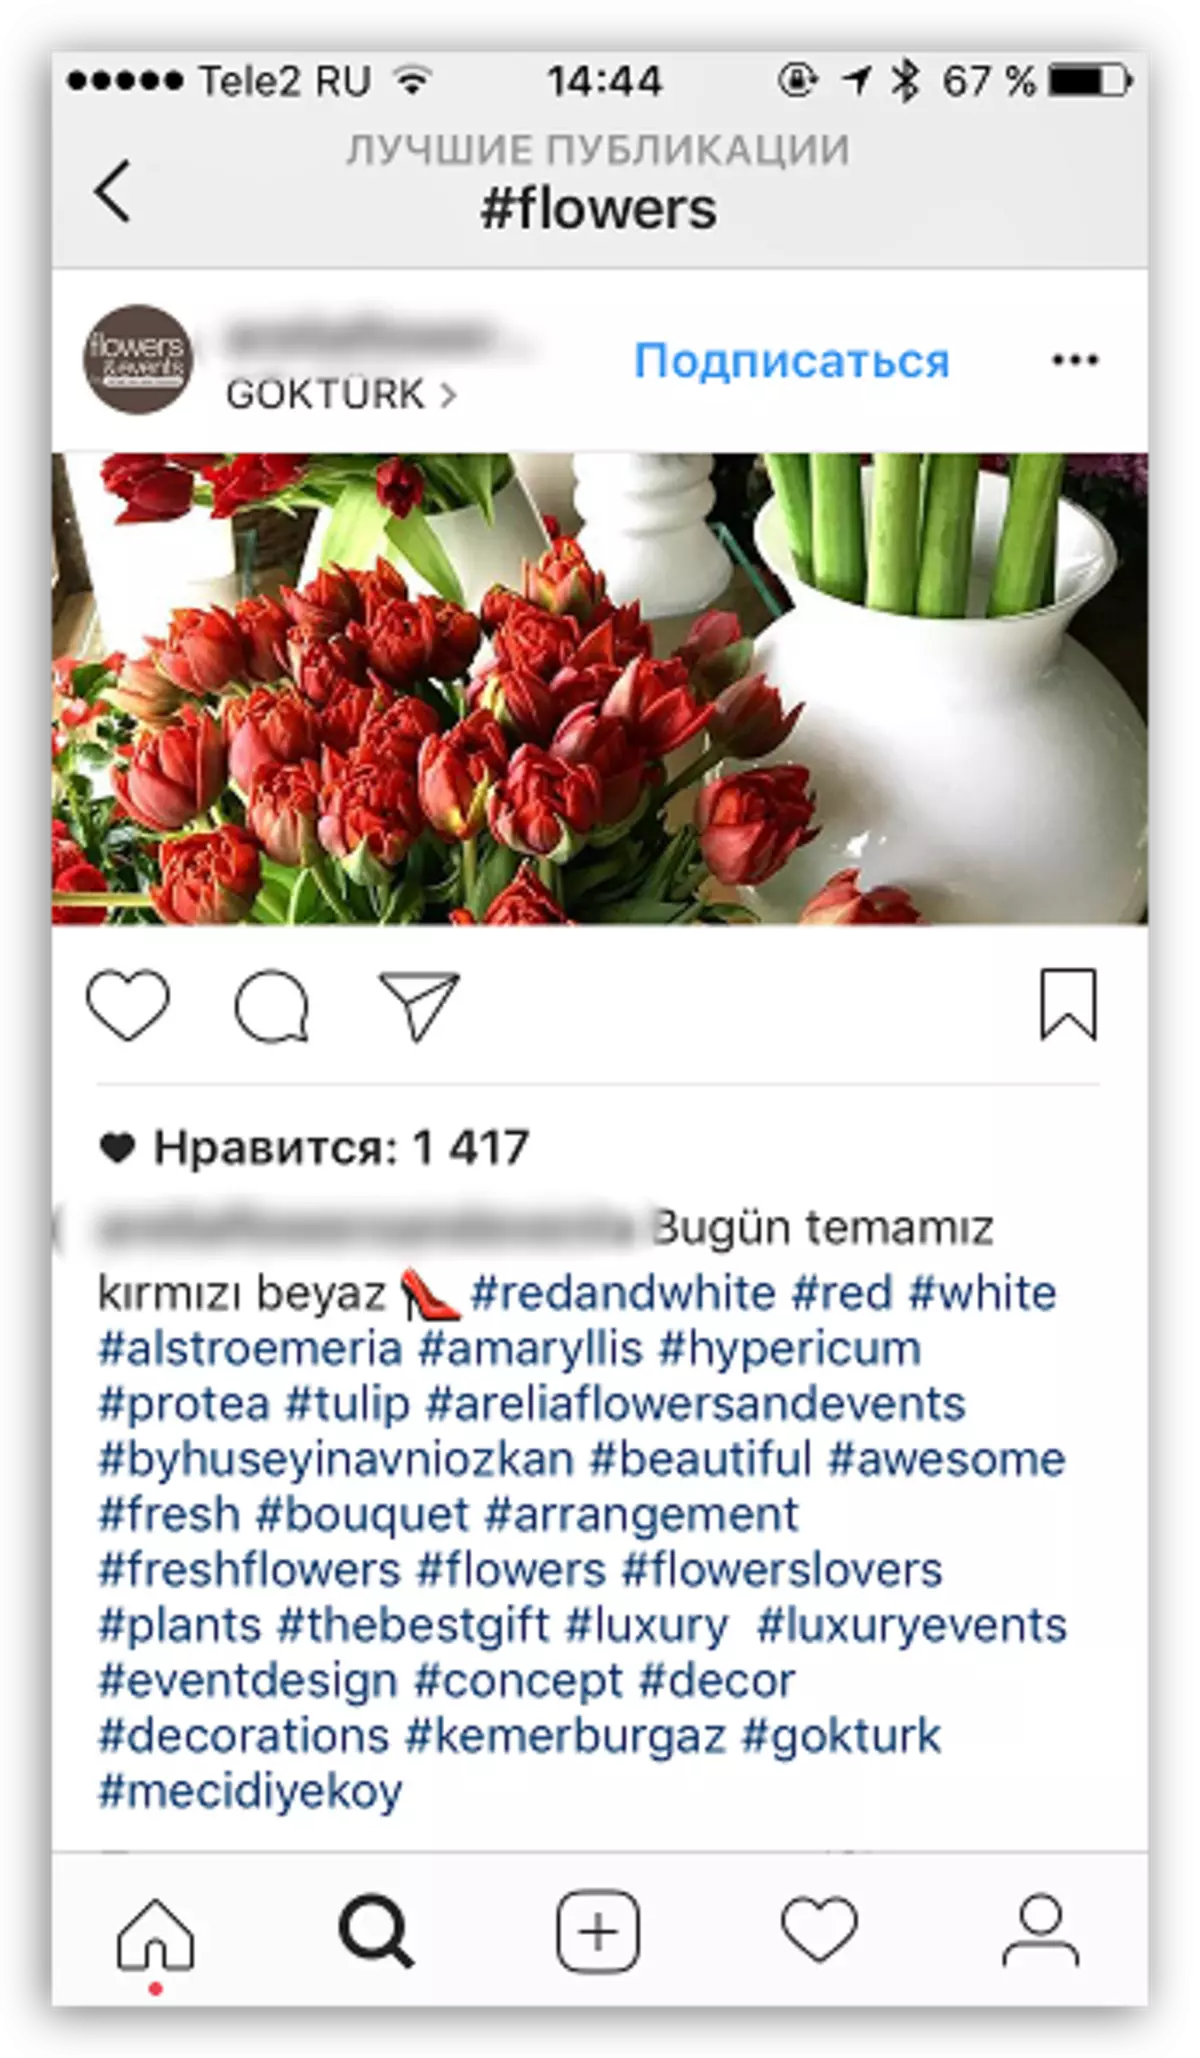 Exemple Hestegs dans Instagram